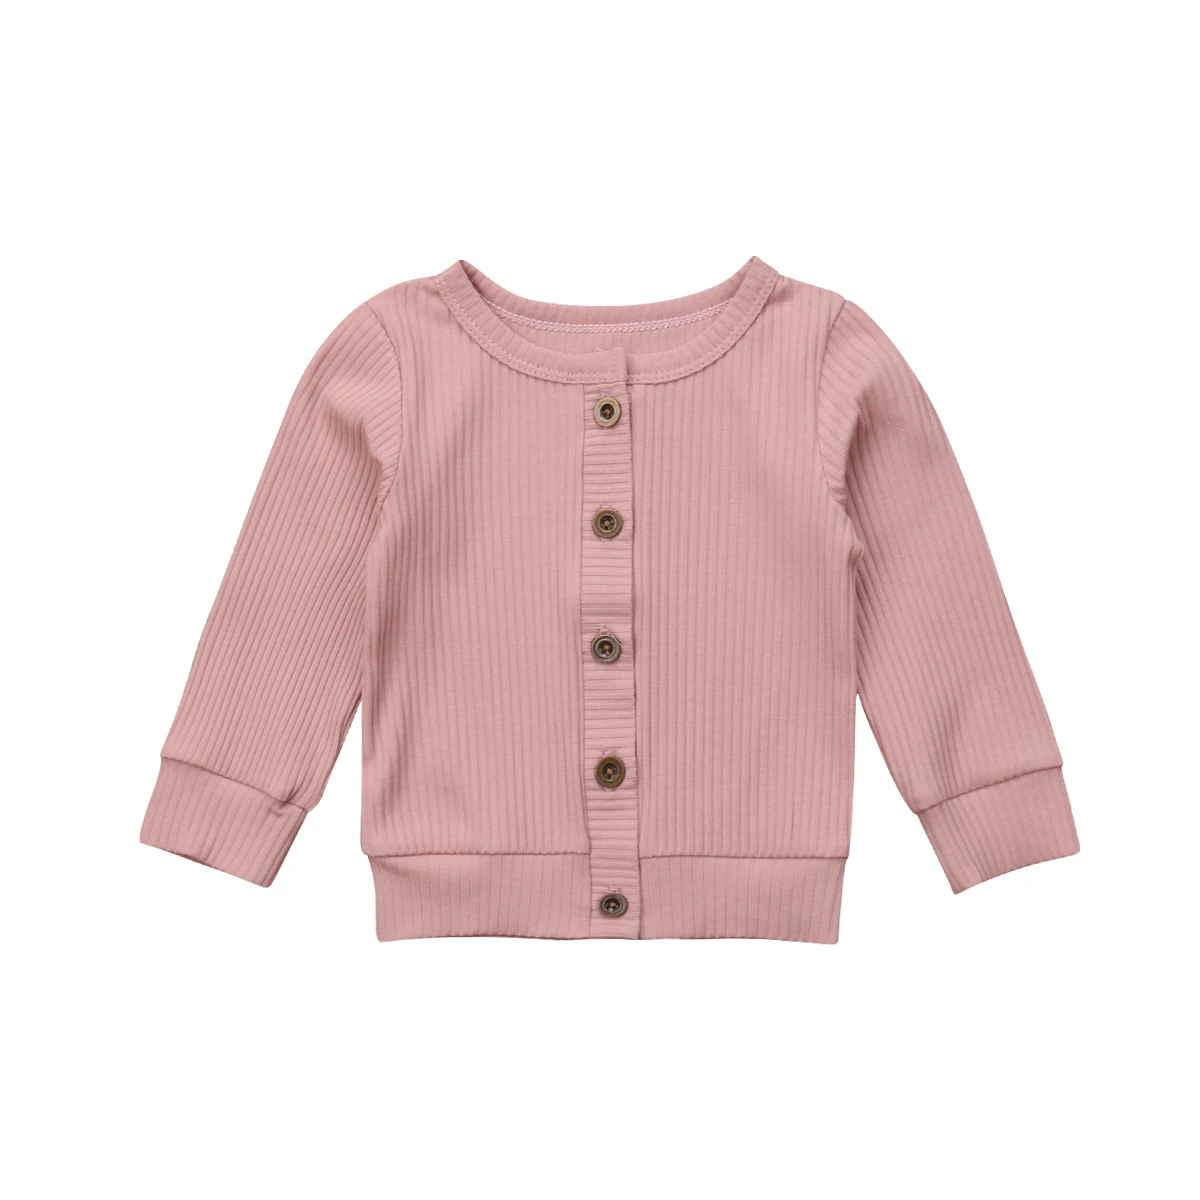 Новорожденных Одежда для маленьких девочек кнопка вязаный свитер кардиган пальто Топы